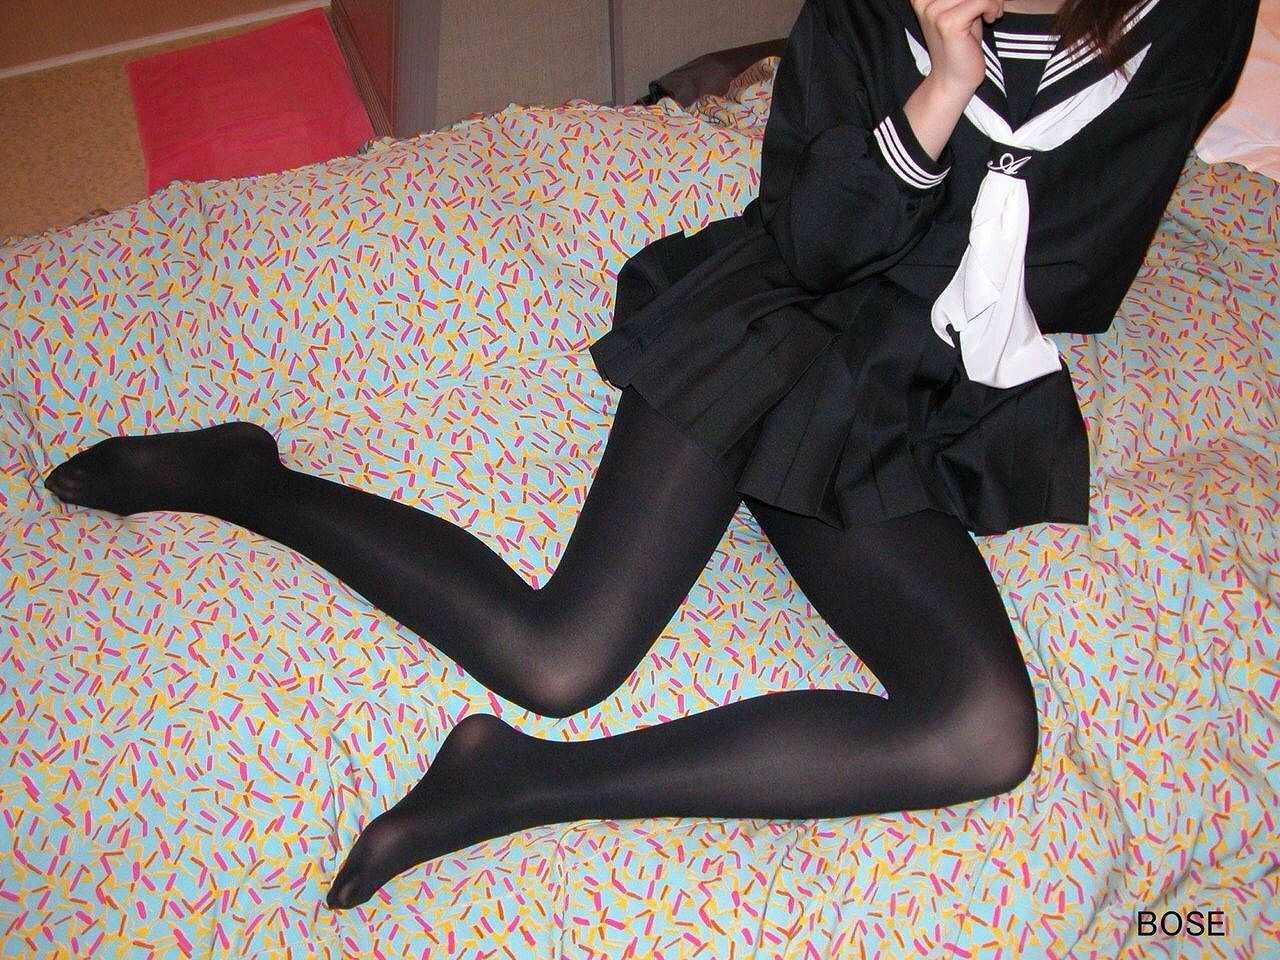 【冬服 パンチラ】黒タイツを履いた女子高生たちを華麗に盗撮 (画像36枚)001